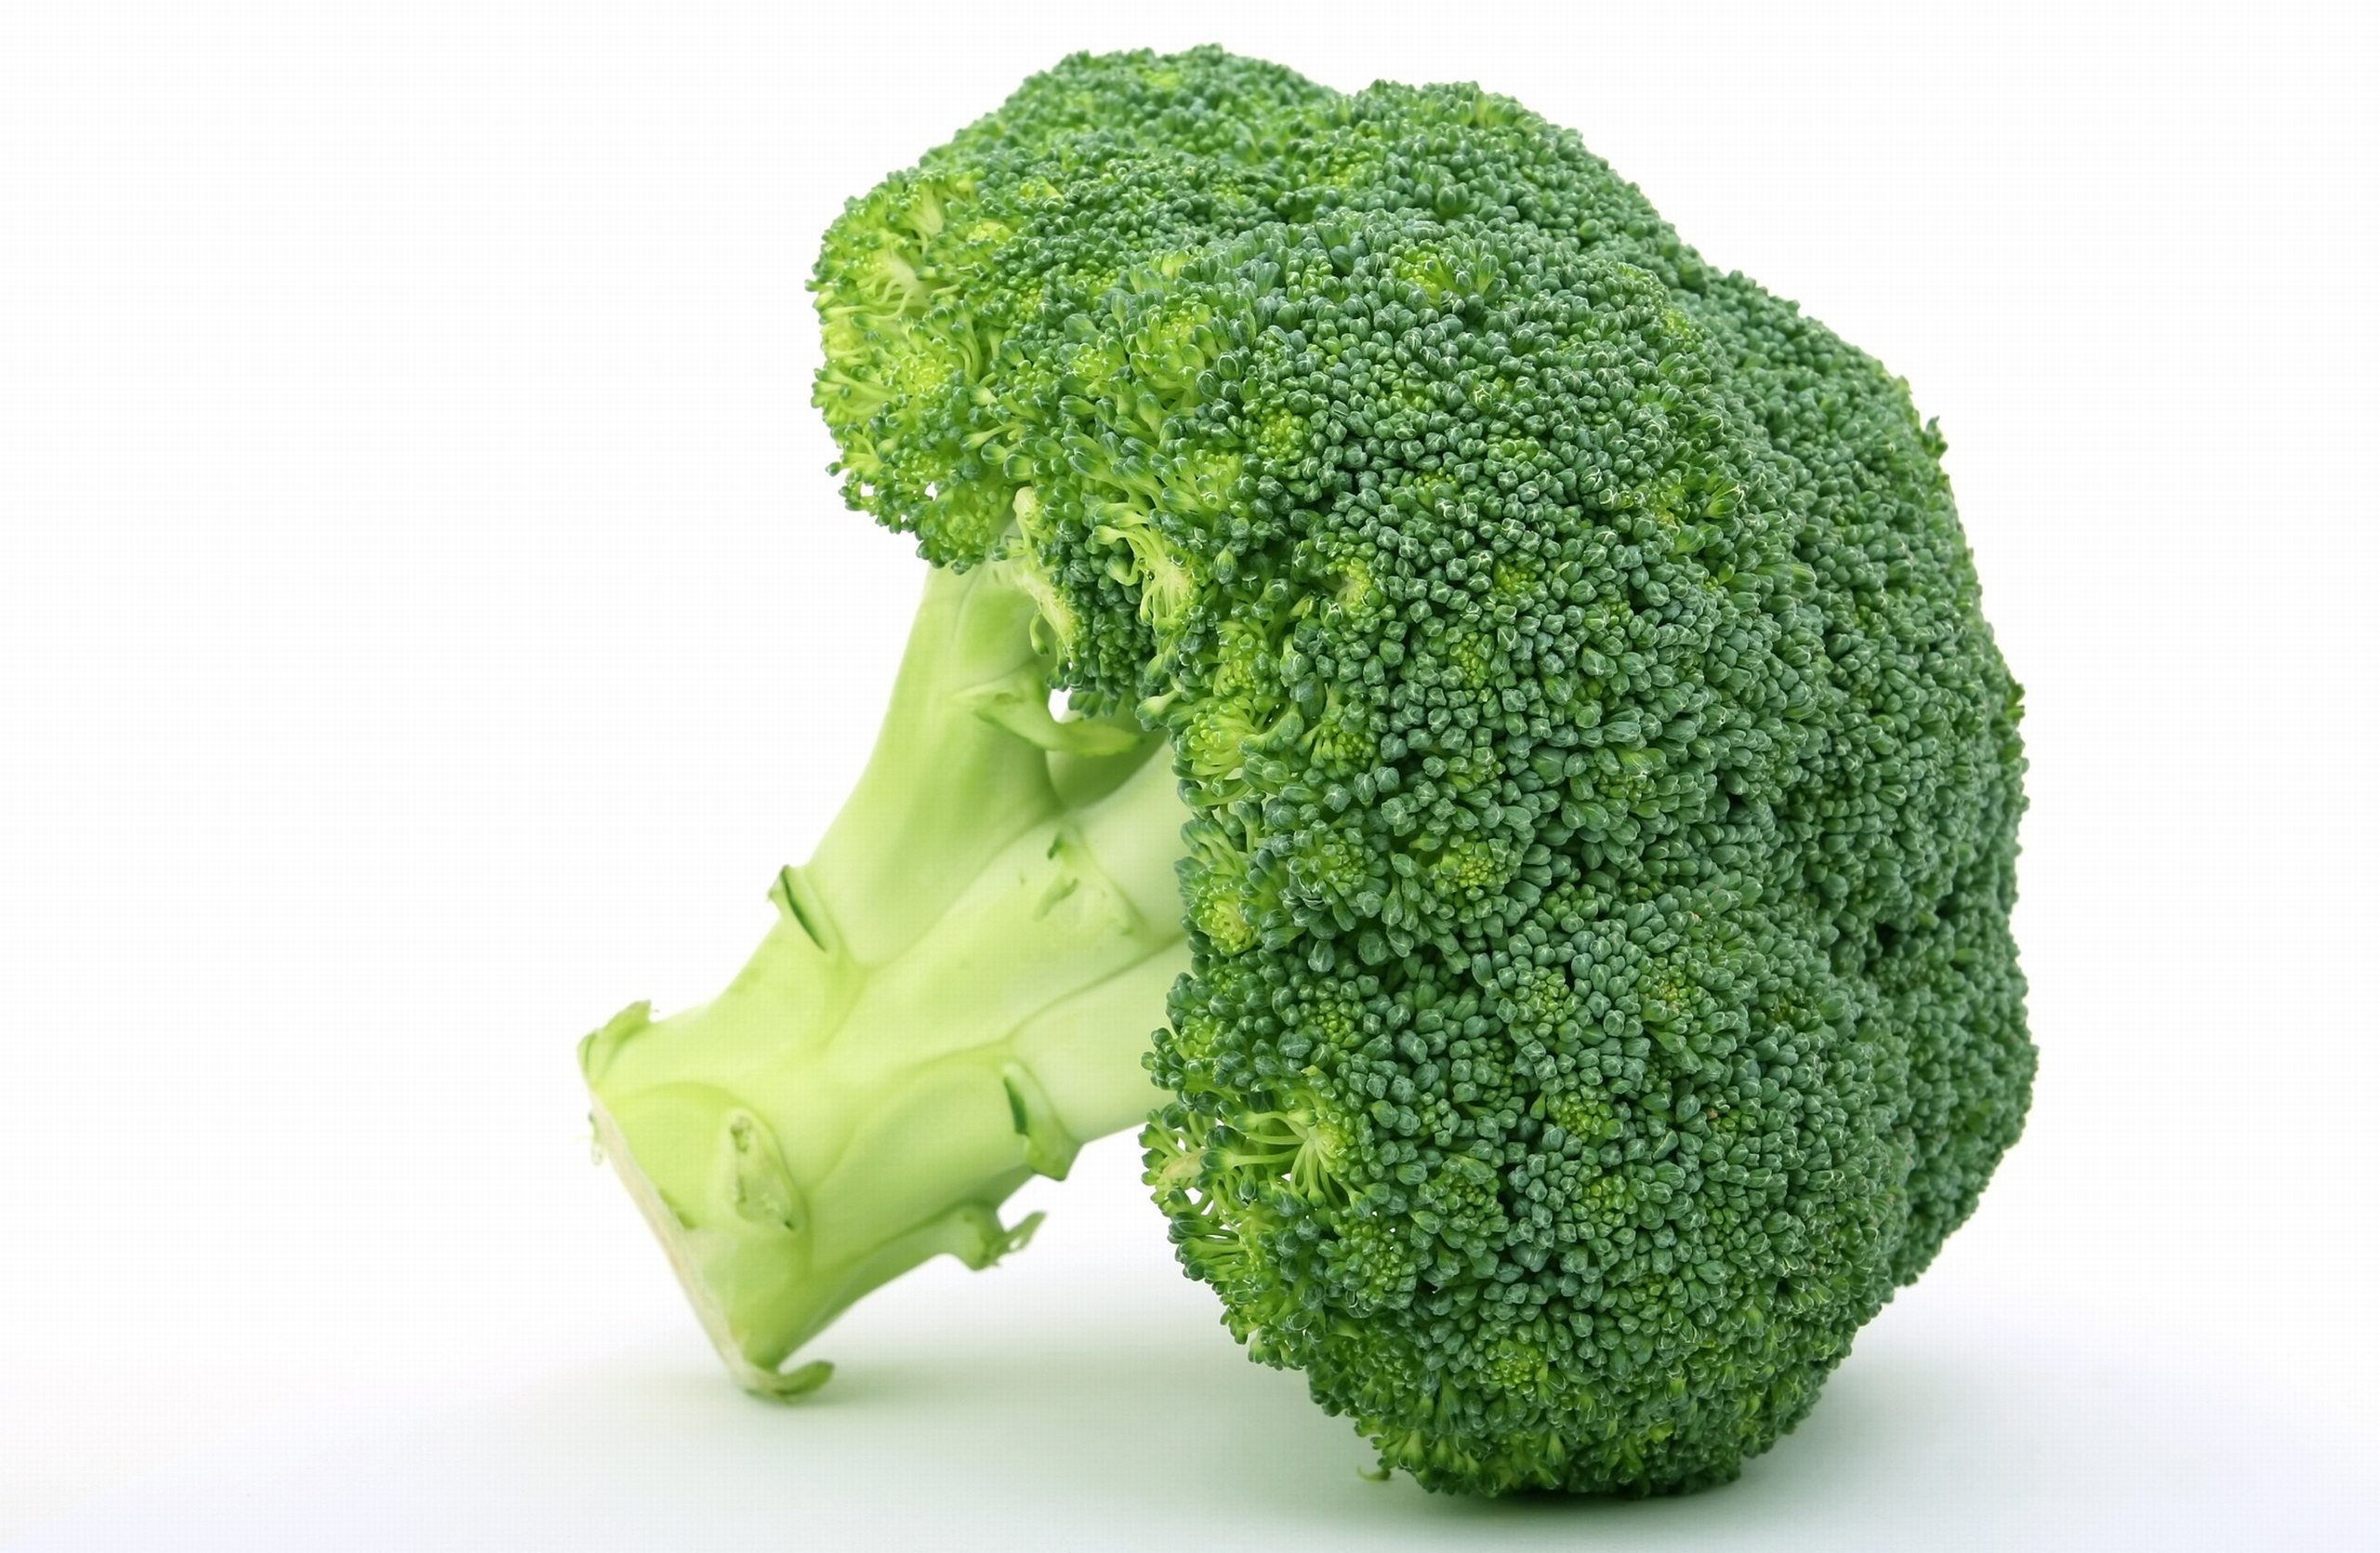 Best Full Hd Broccoli Wallpaper Free Download - Broccoli Free , HD Wallpaper & Backgrounds